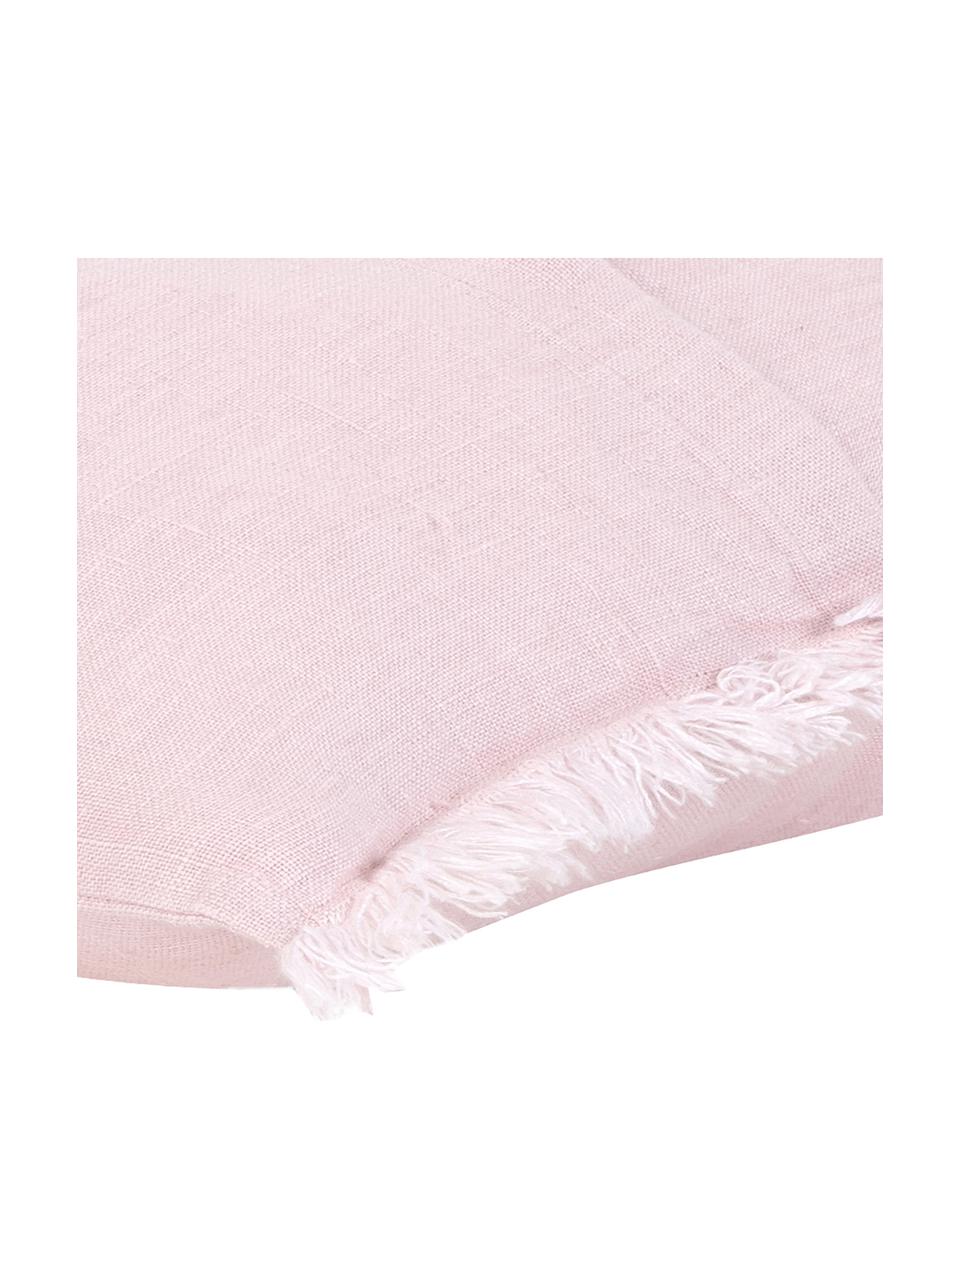 Linnen kussenhoes Luana in roze met franjes, 100% linnen, Oudroze, 50 x 50 cm